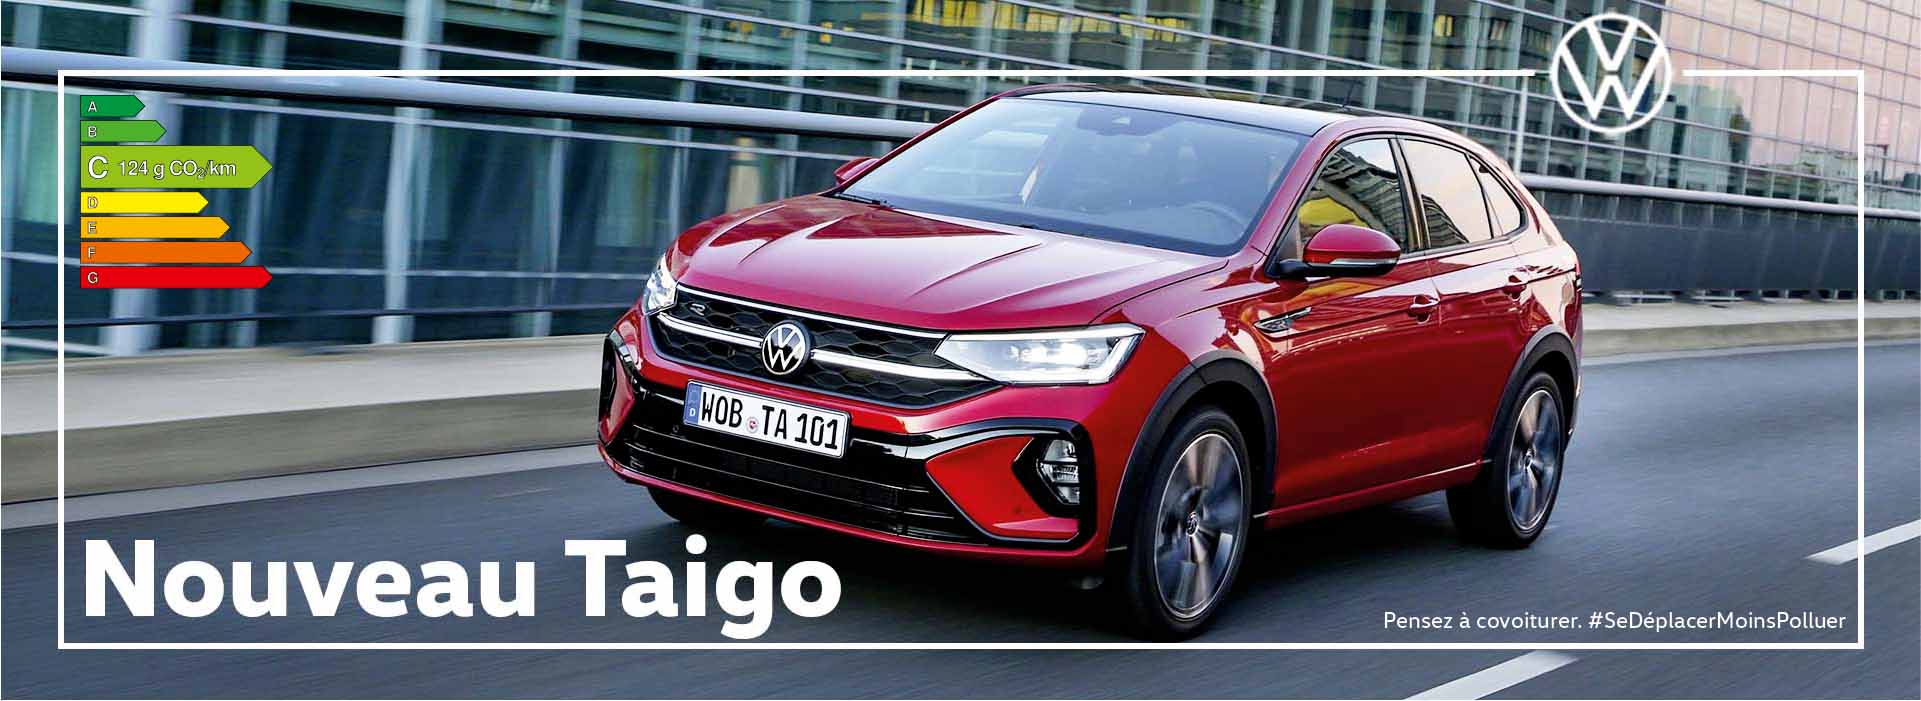 Essai Que pensez-vous d la Volkswagen Taigo ?